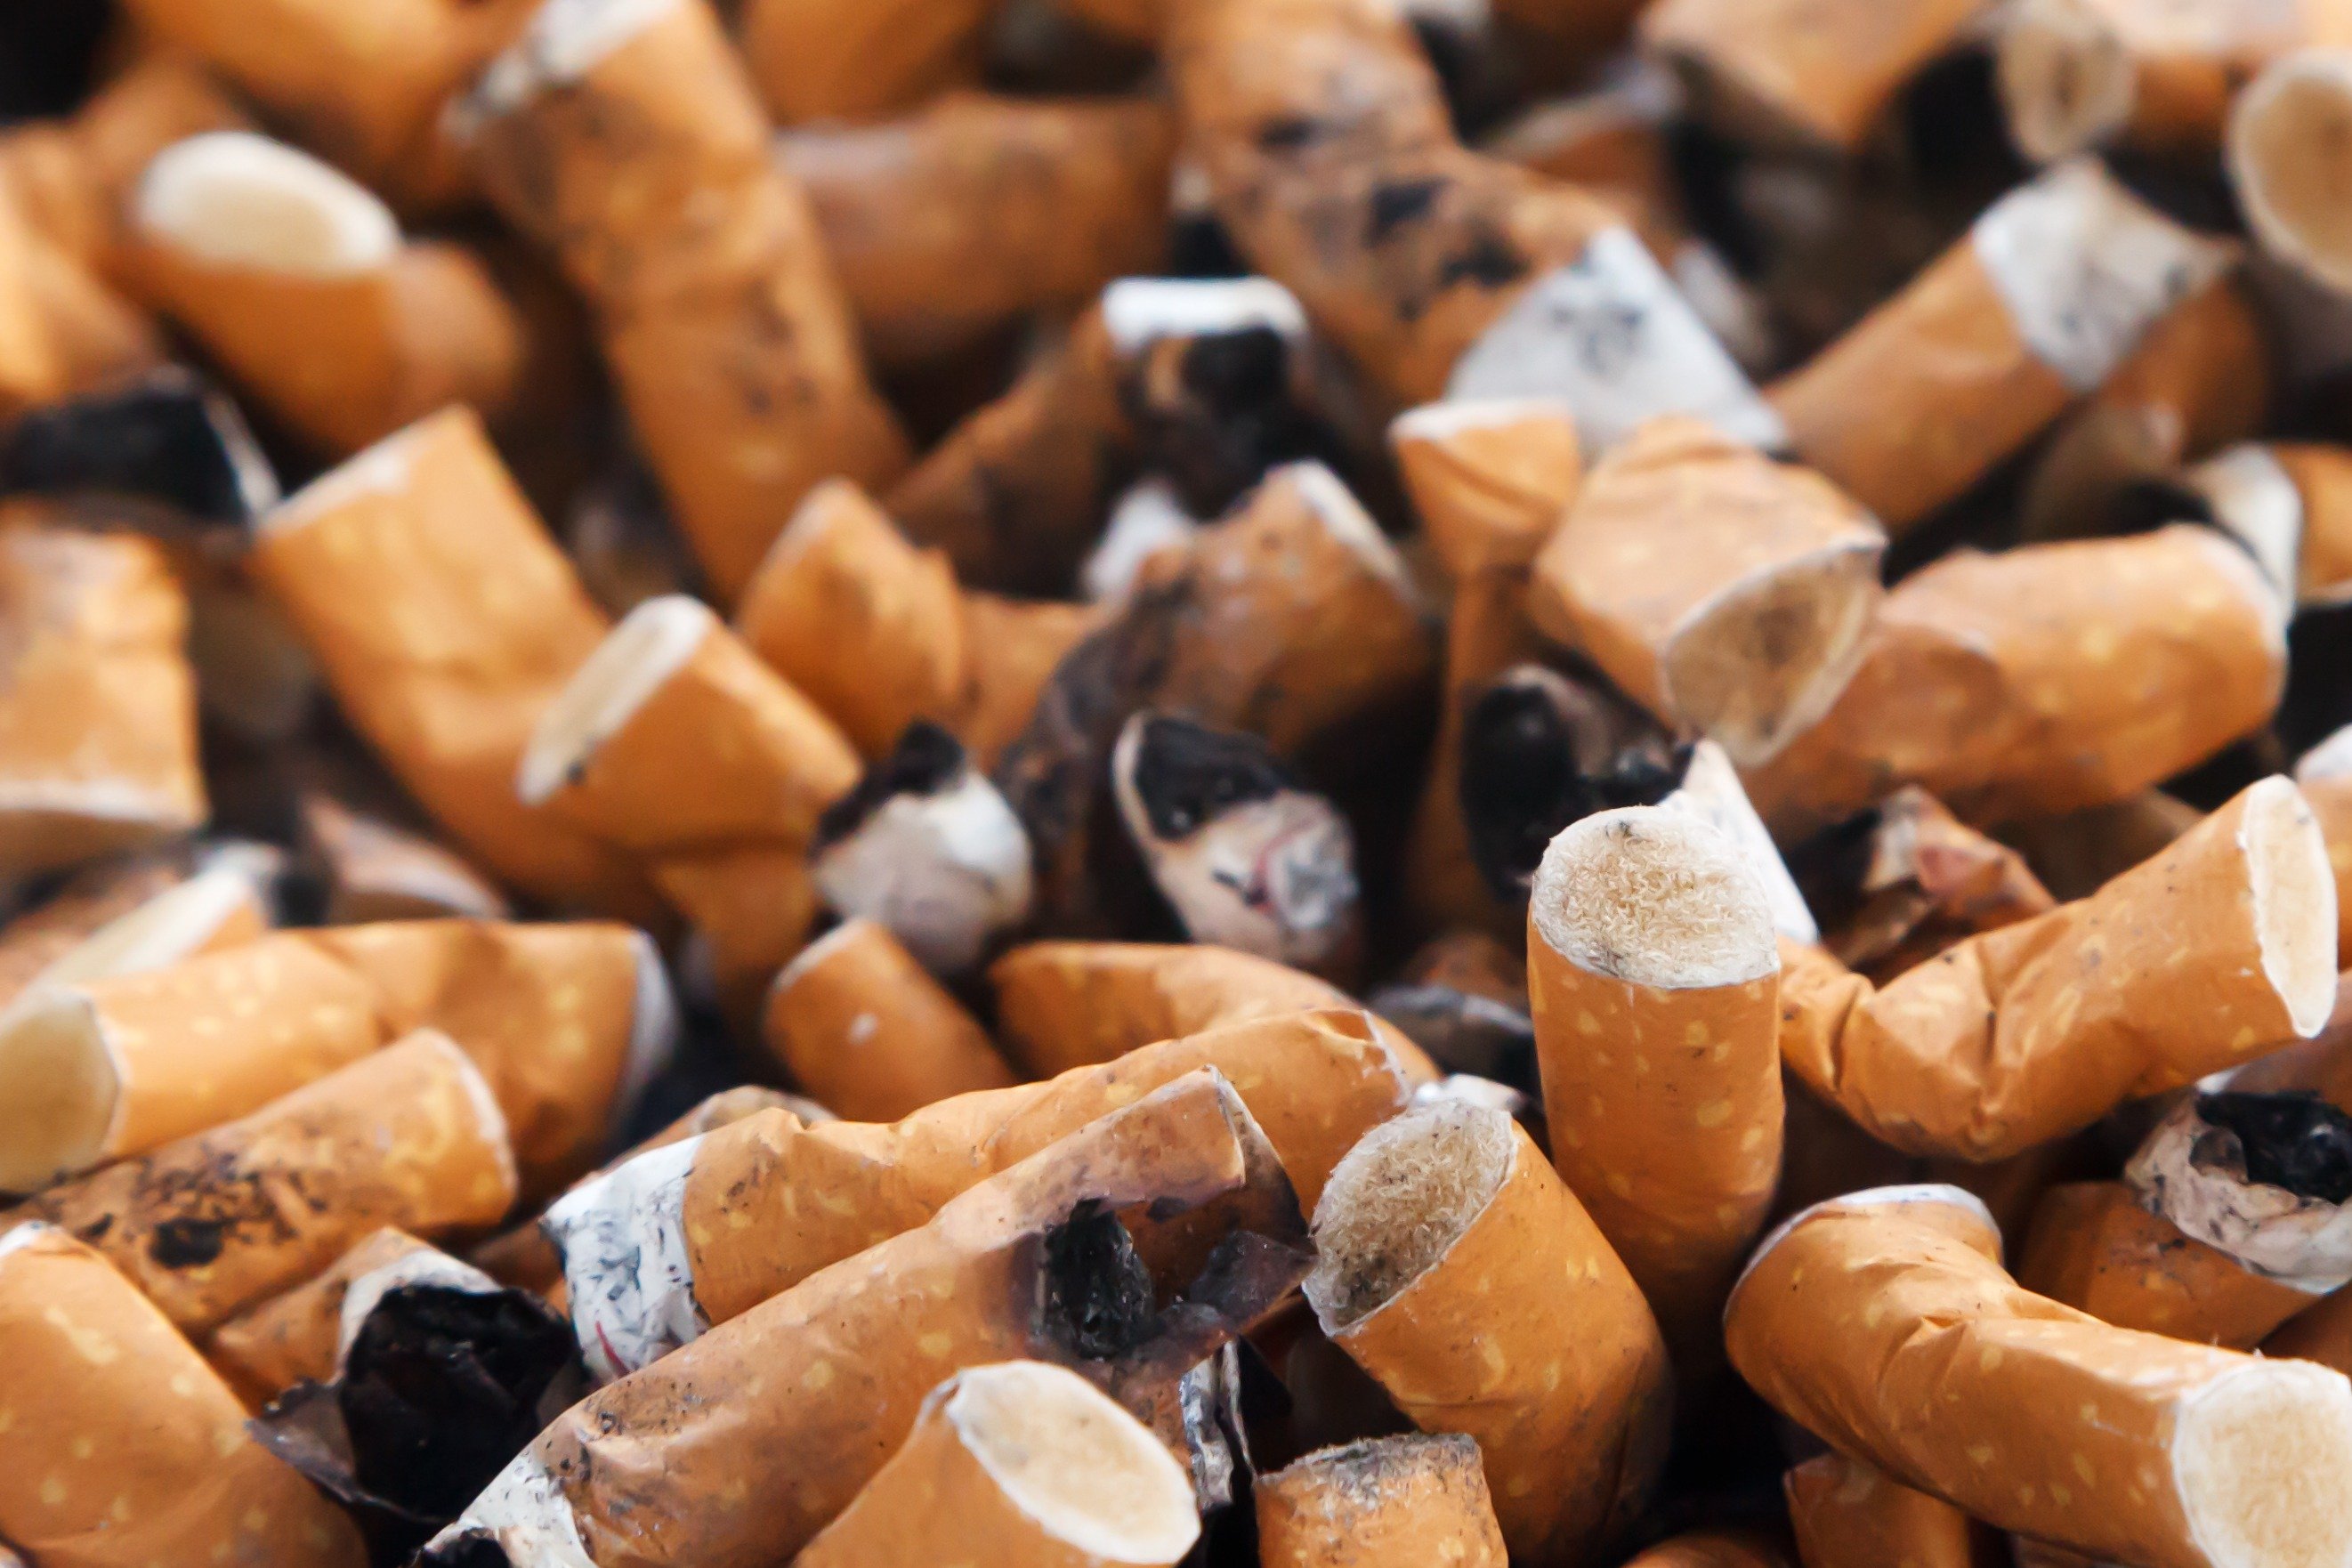 Fumar i beure perjudica les artèries dels adolescents, segons un estudi